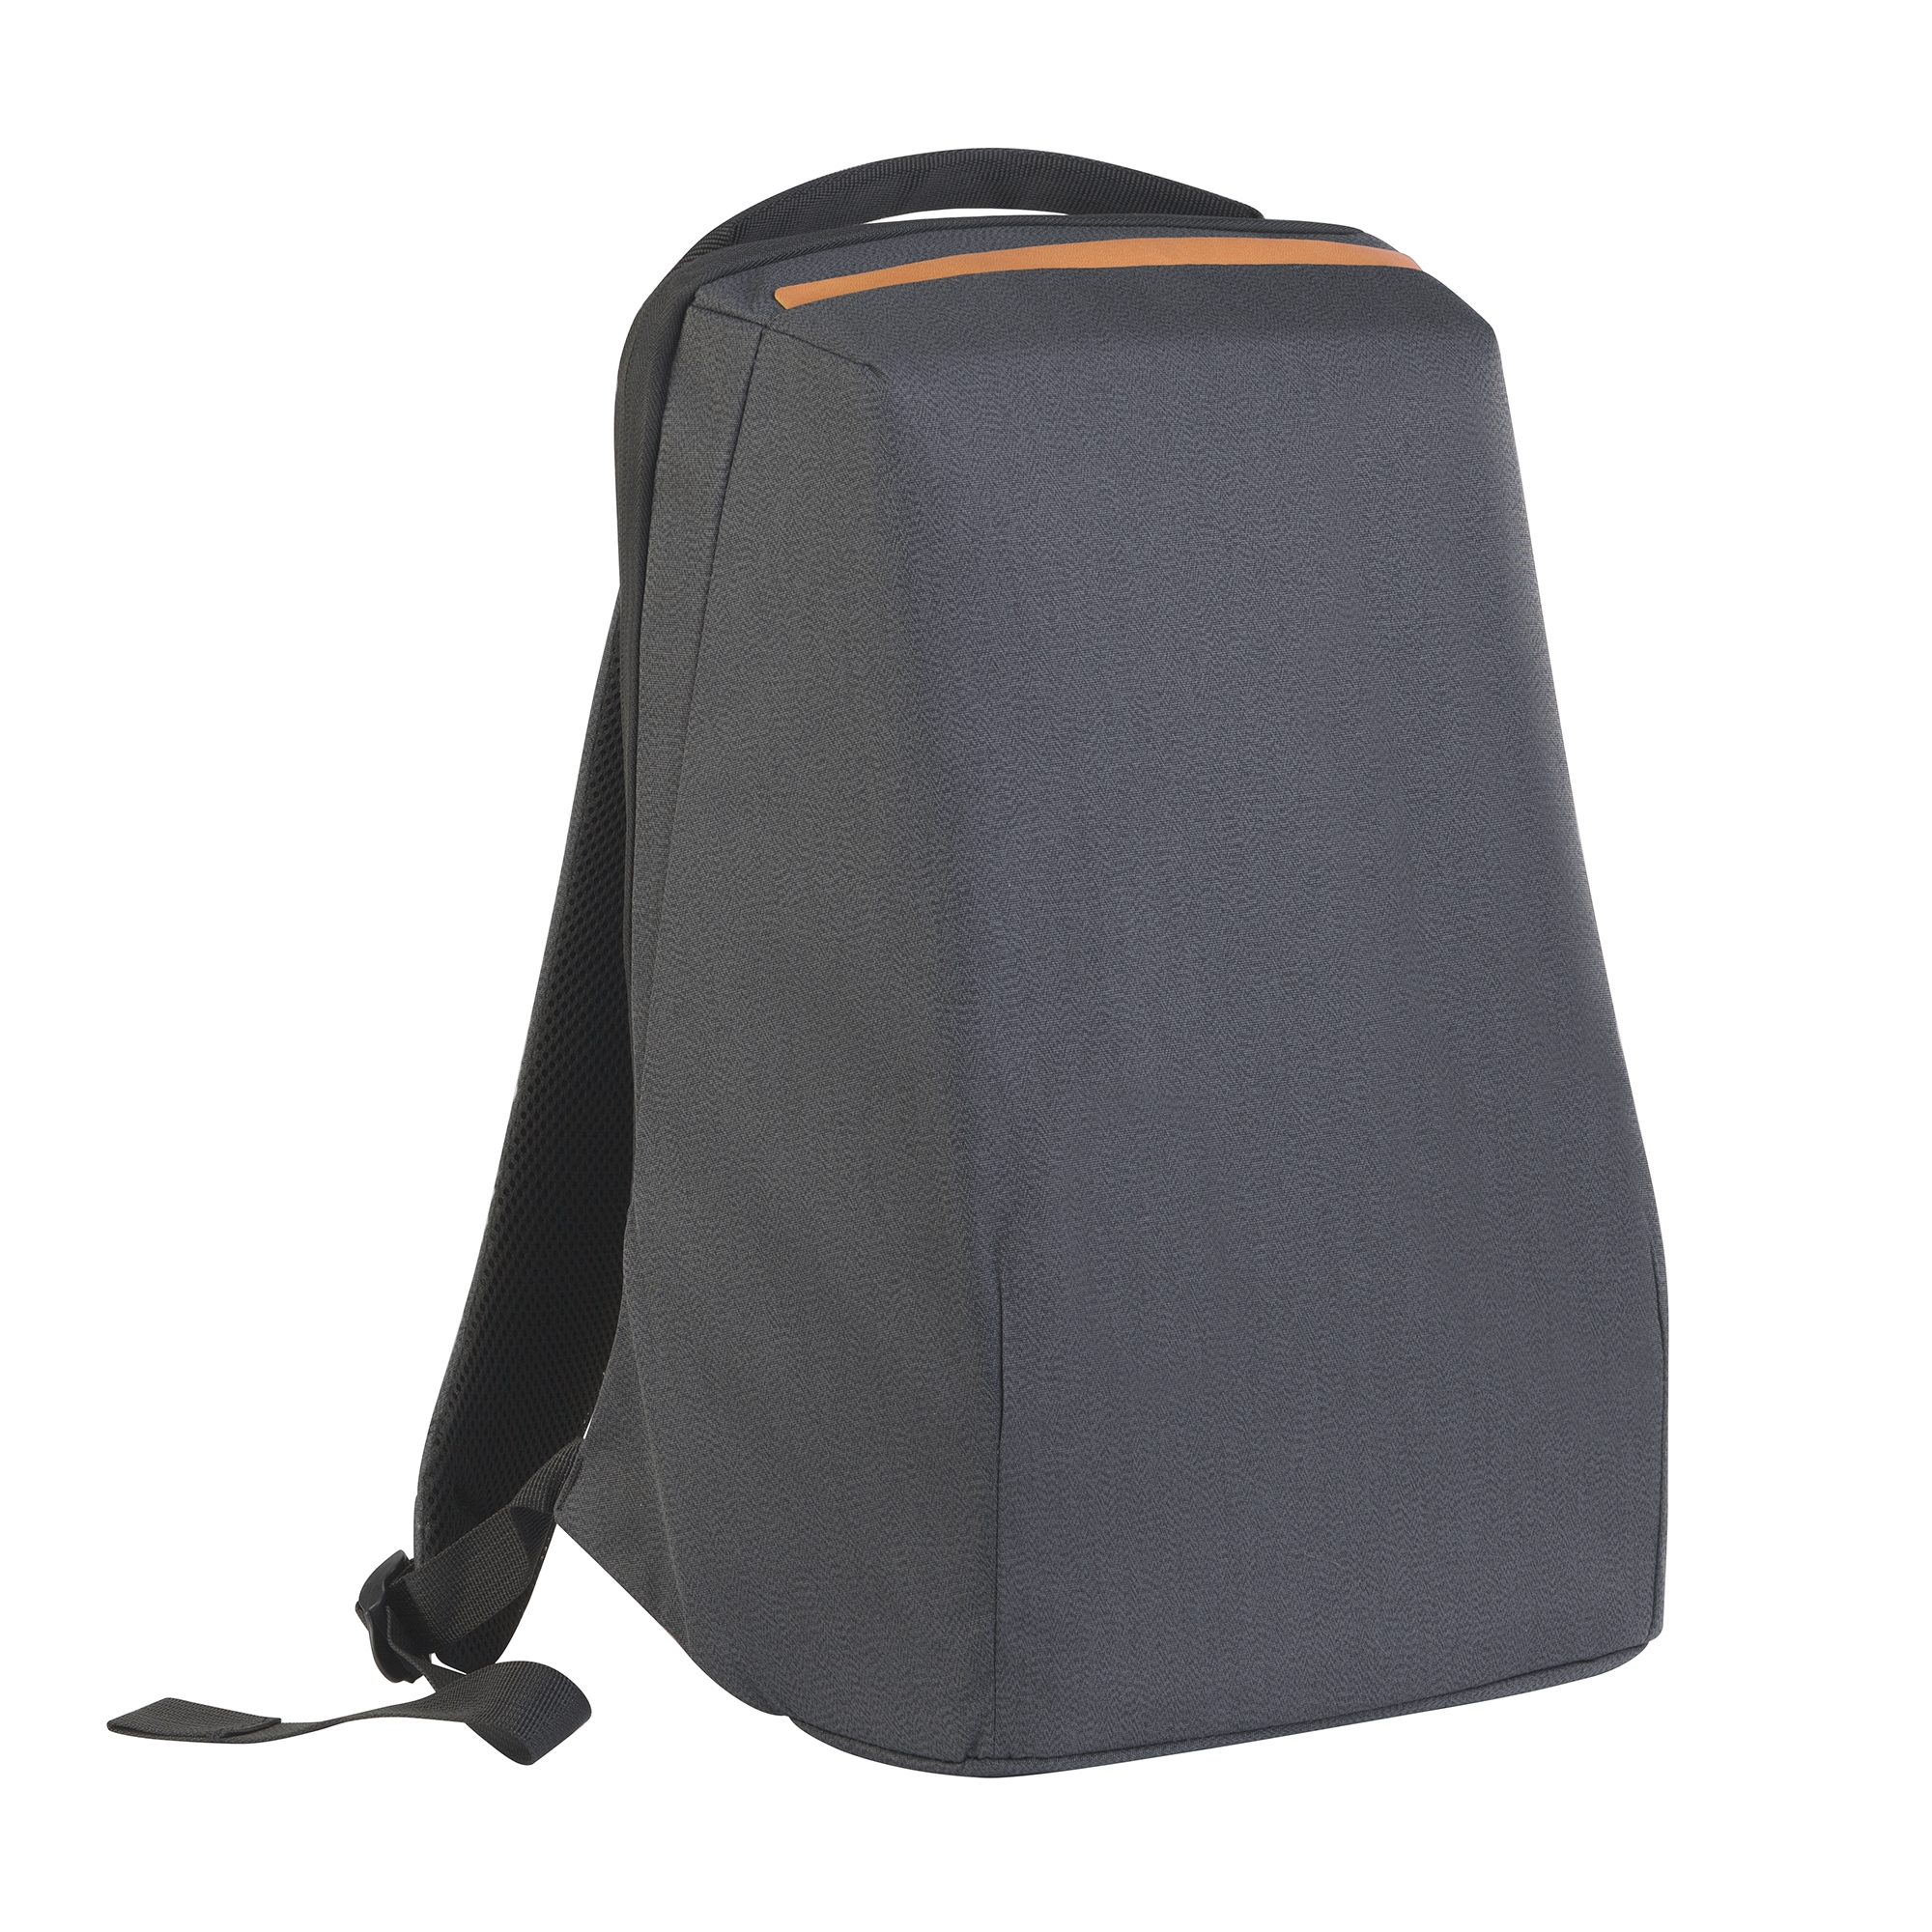 Рюкзак "City" с USB-разъемом, коричневый, полиэстер/pu